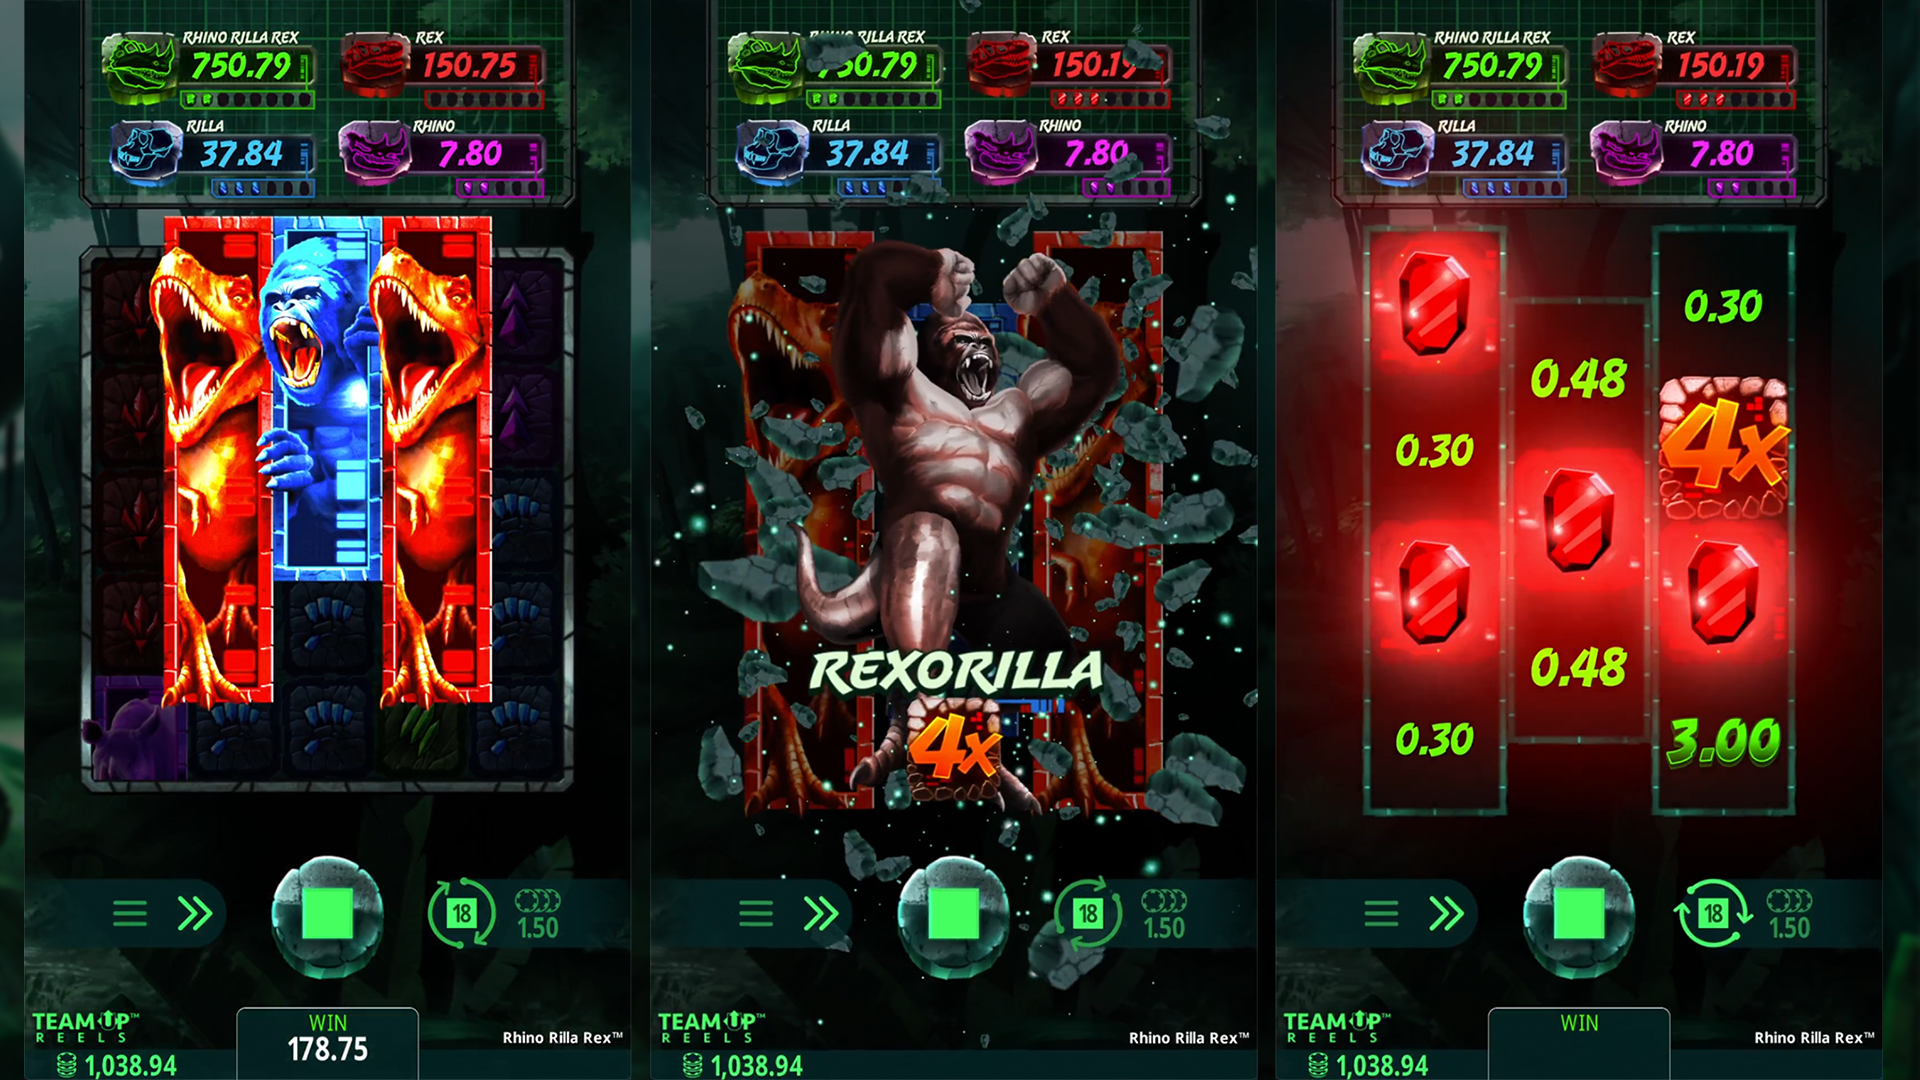 Rhino Rilla Rex™ Free Spins